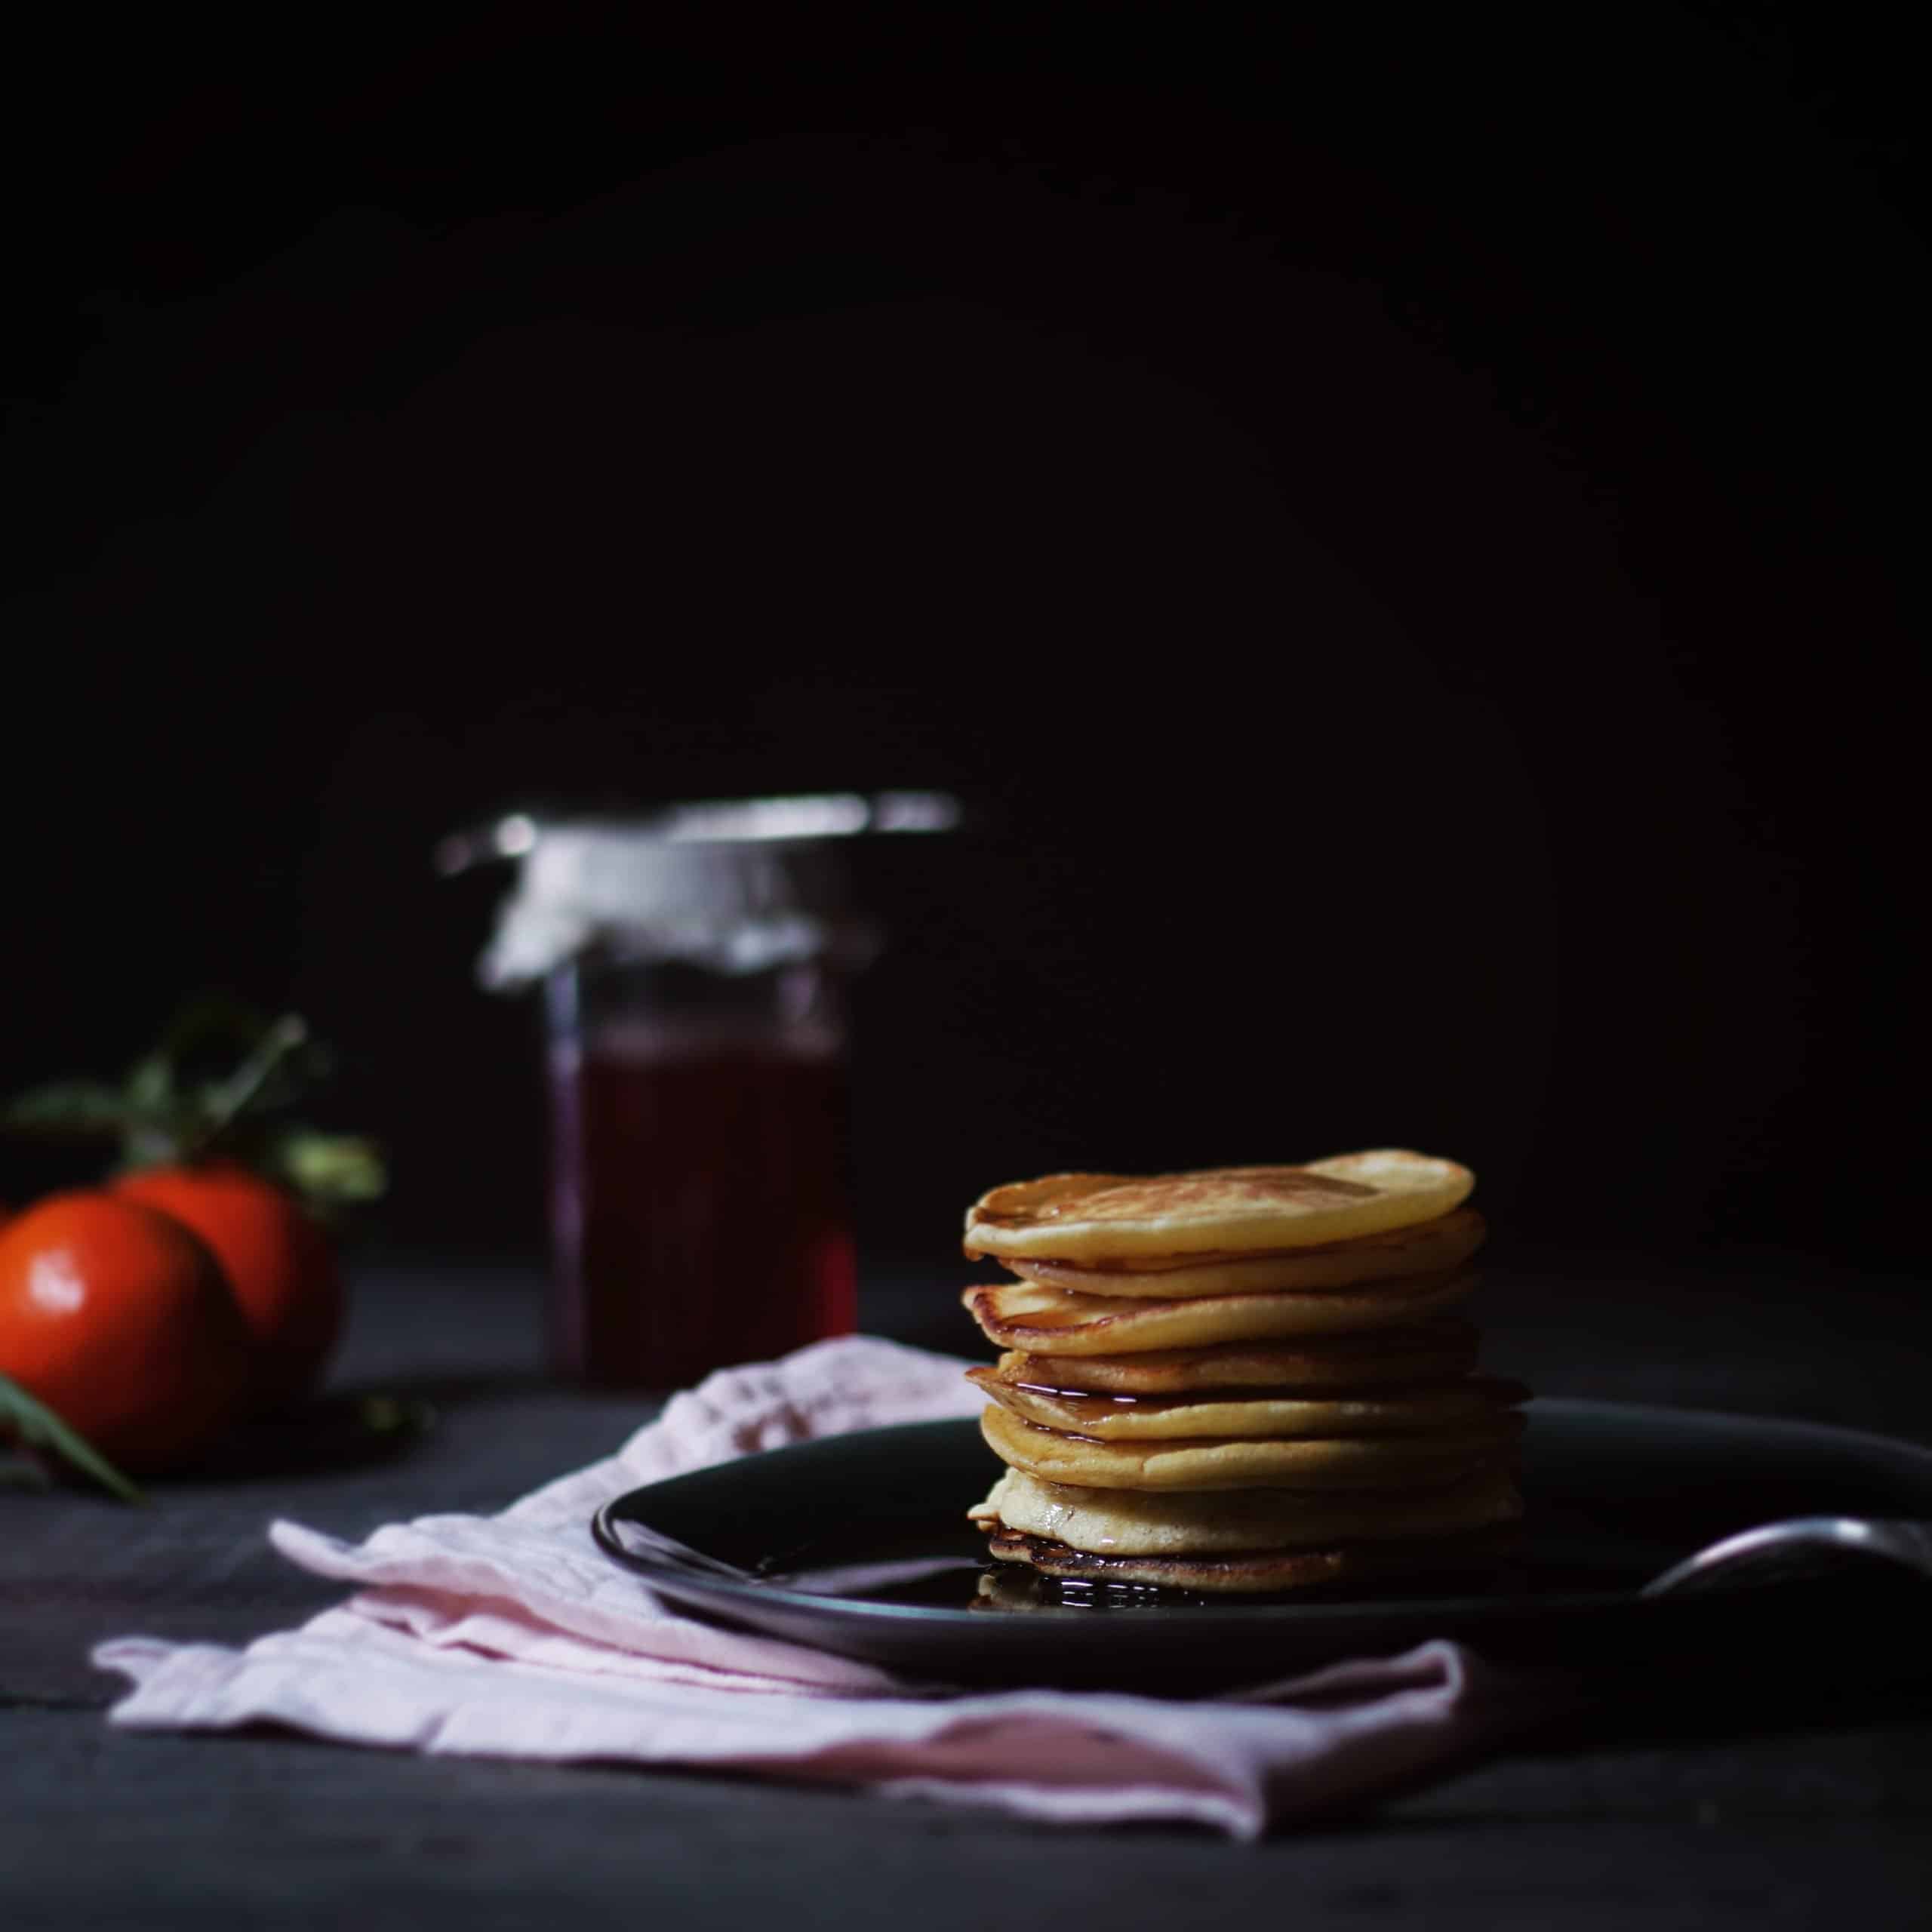 vidéo culinaire recette pancakes écossais studio culinaire nozimages en bretagne